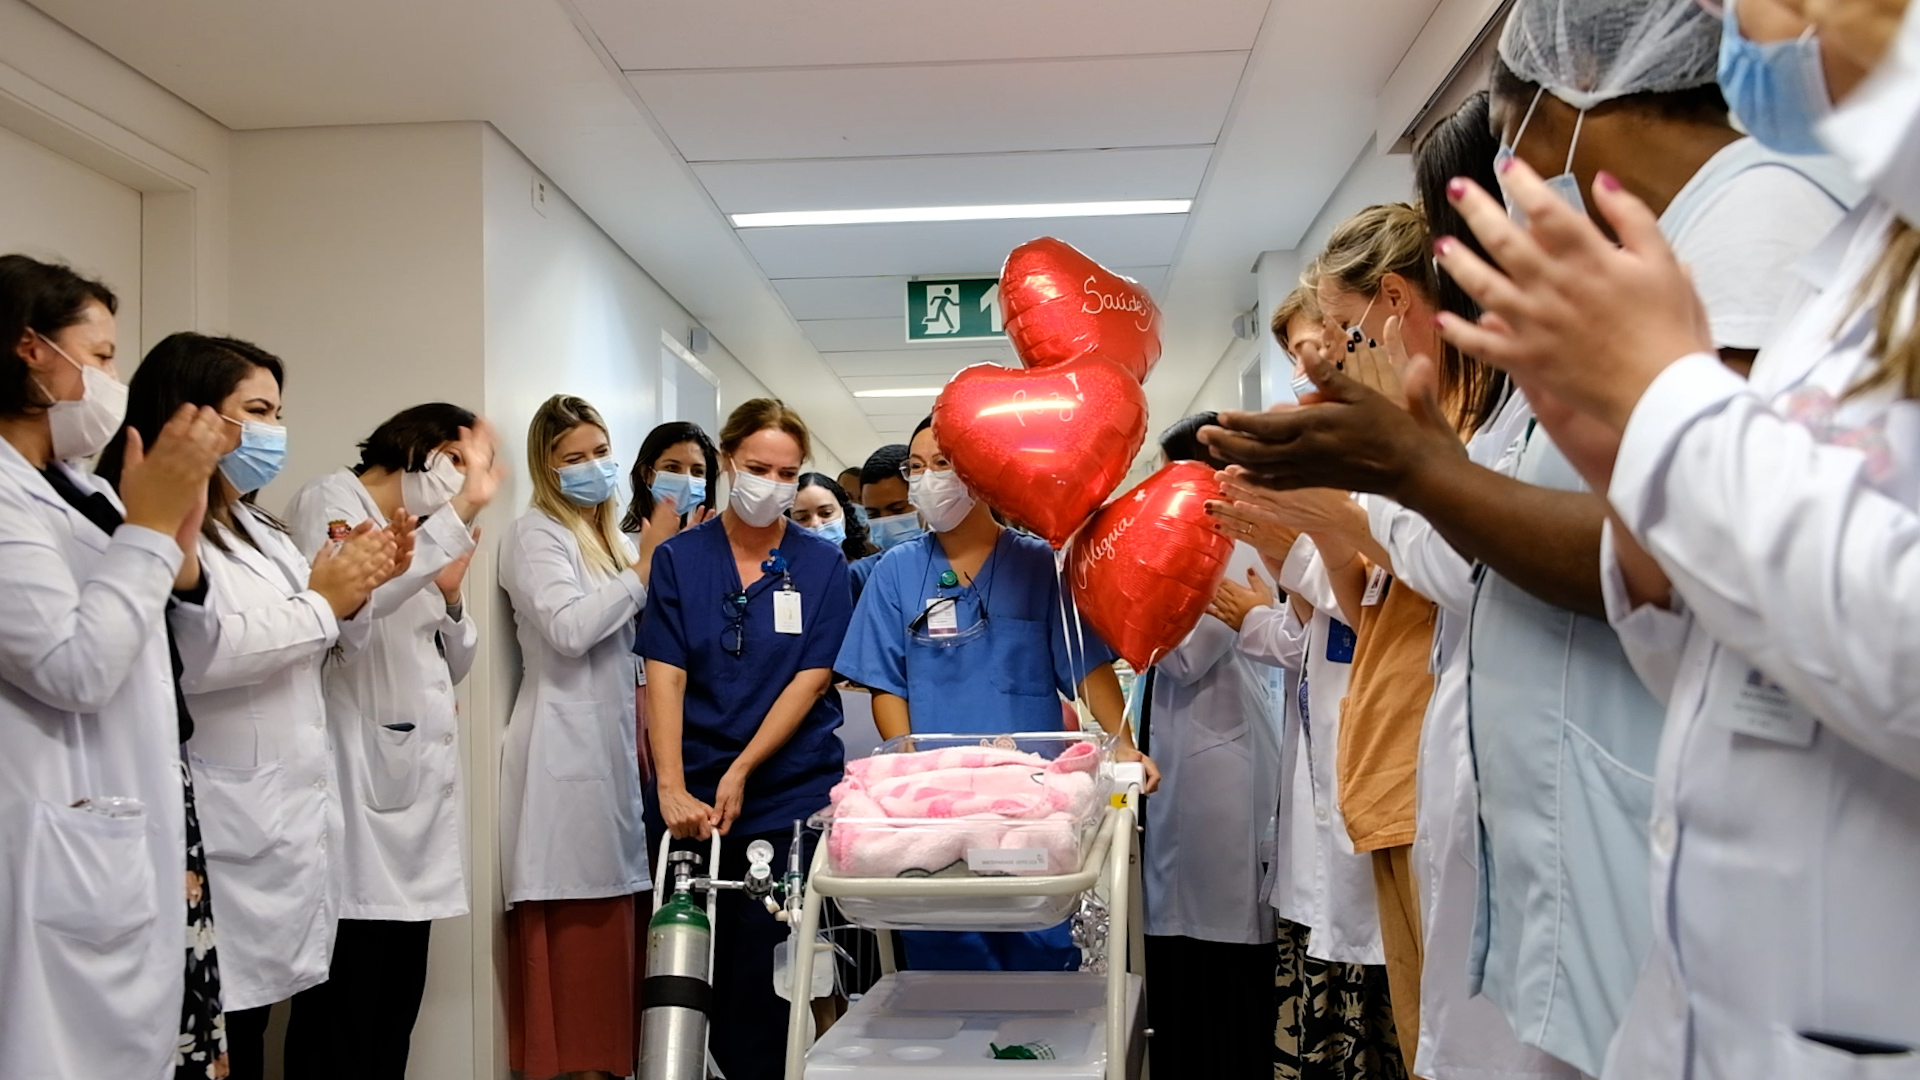 A foto mostra um ambiente hospitalar no qual mais de uma dezena de pessoas usando jalecos e máscaras aplaudem; todos estão voltados para um carrinho com um bebê, envolto em uma manta cor-de-rosa 